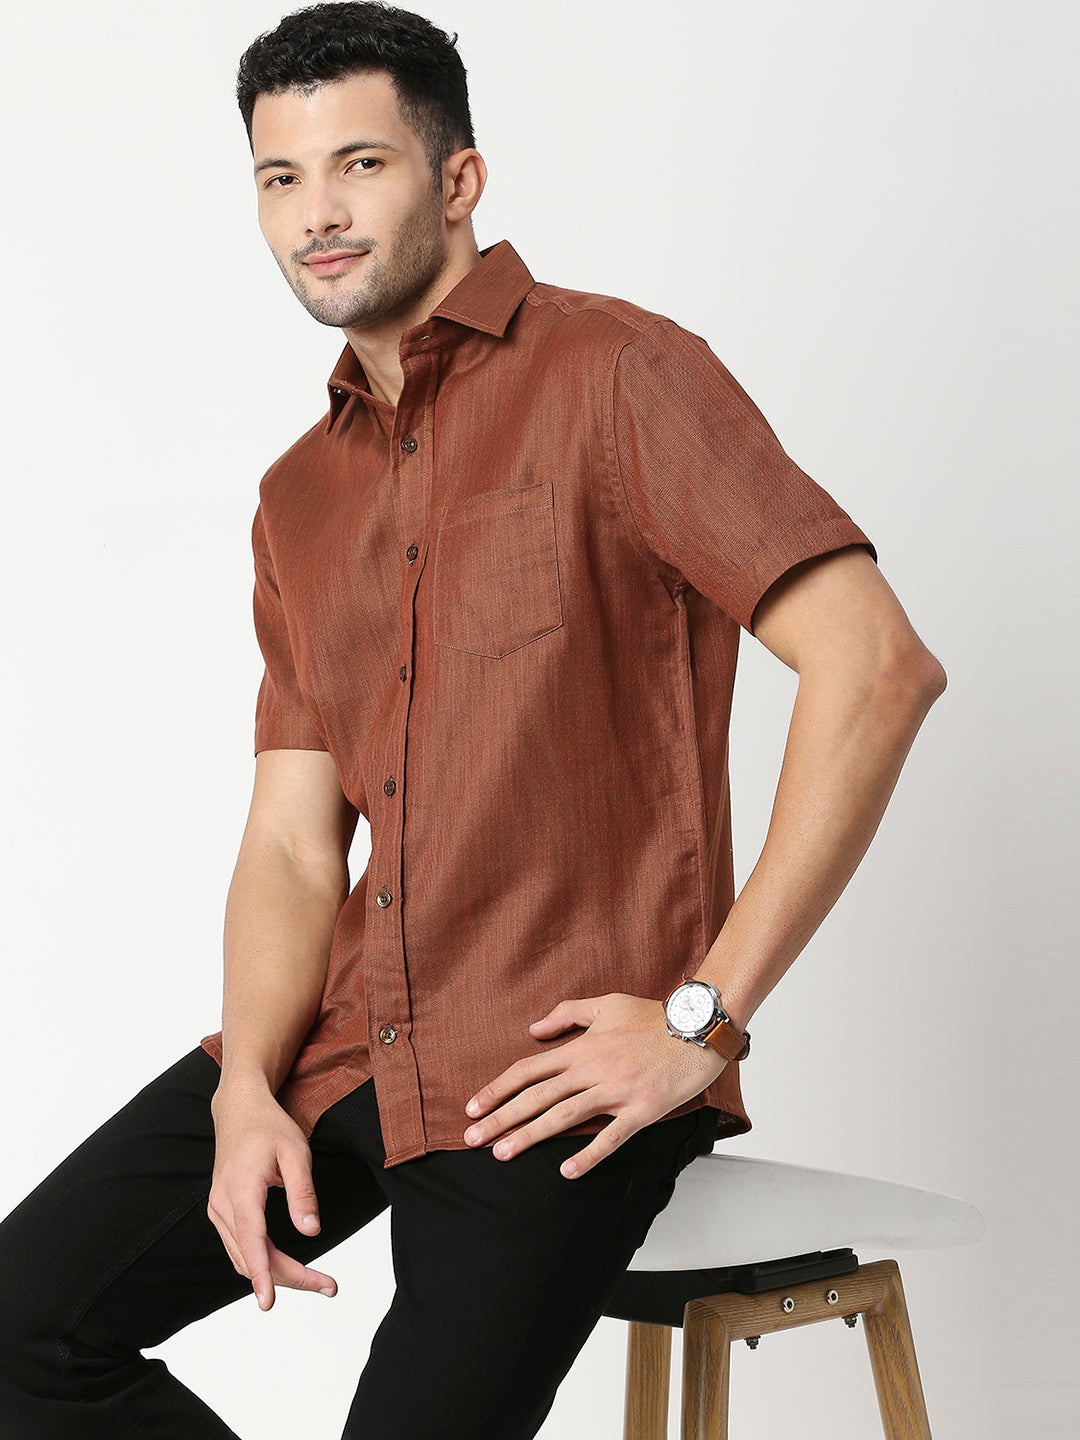 Zephyr Espresso Brown Linen Look Shirt